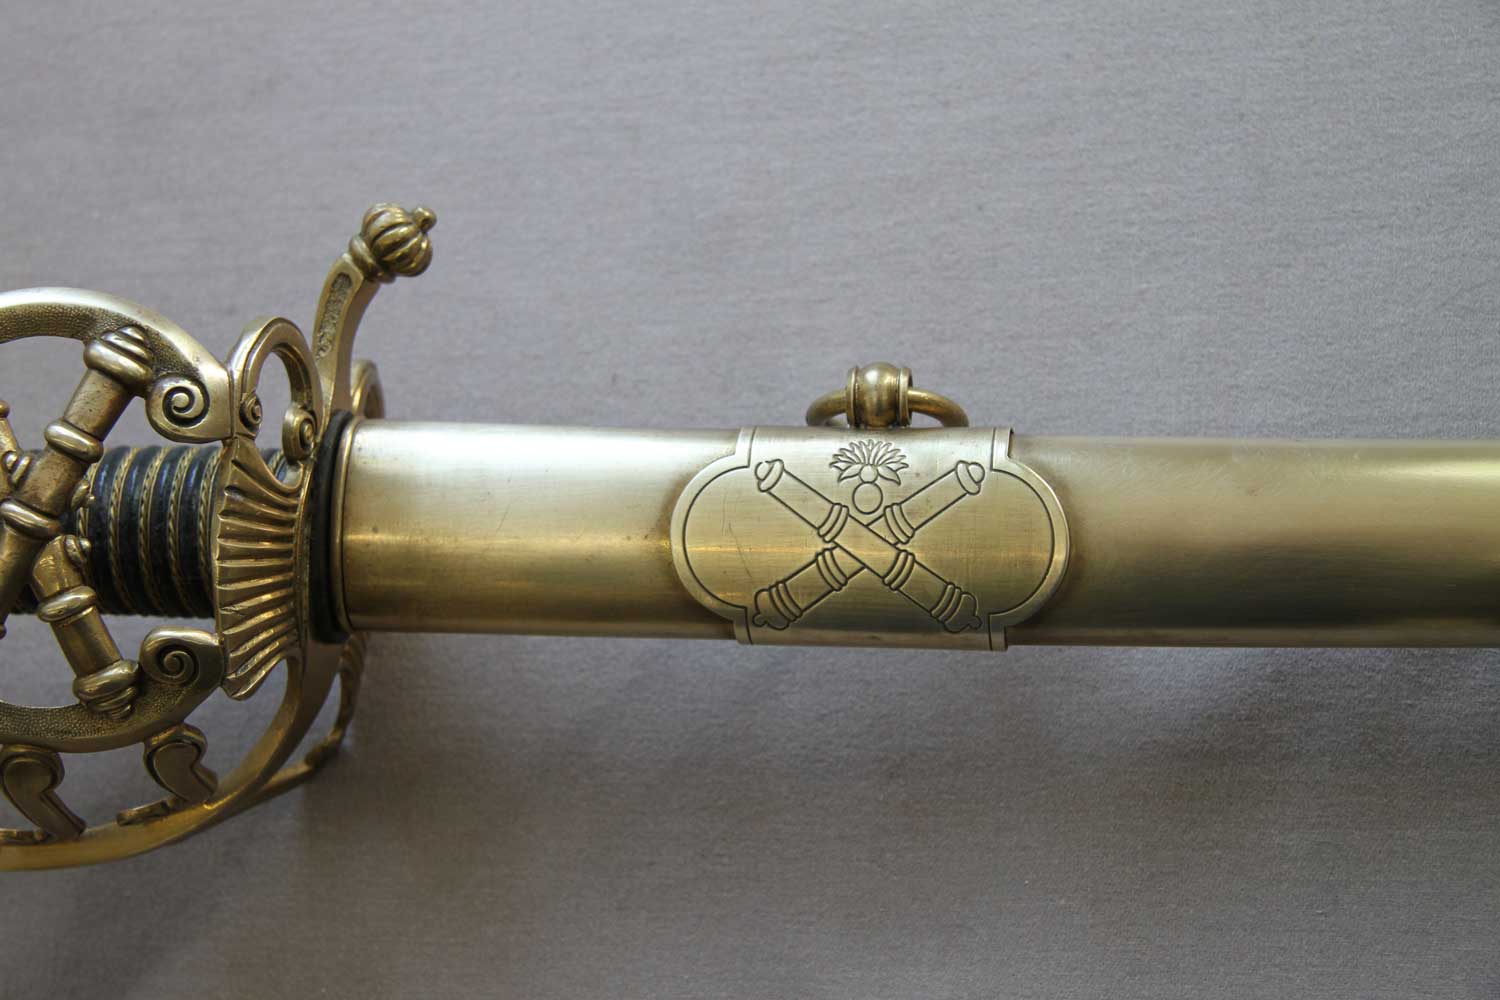 French, Artillery Senior Officer's Sword